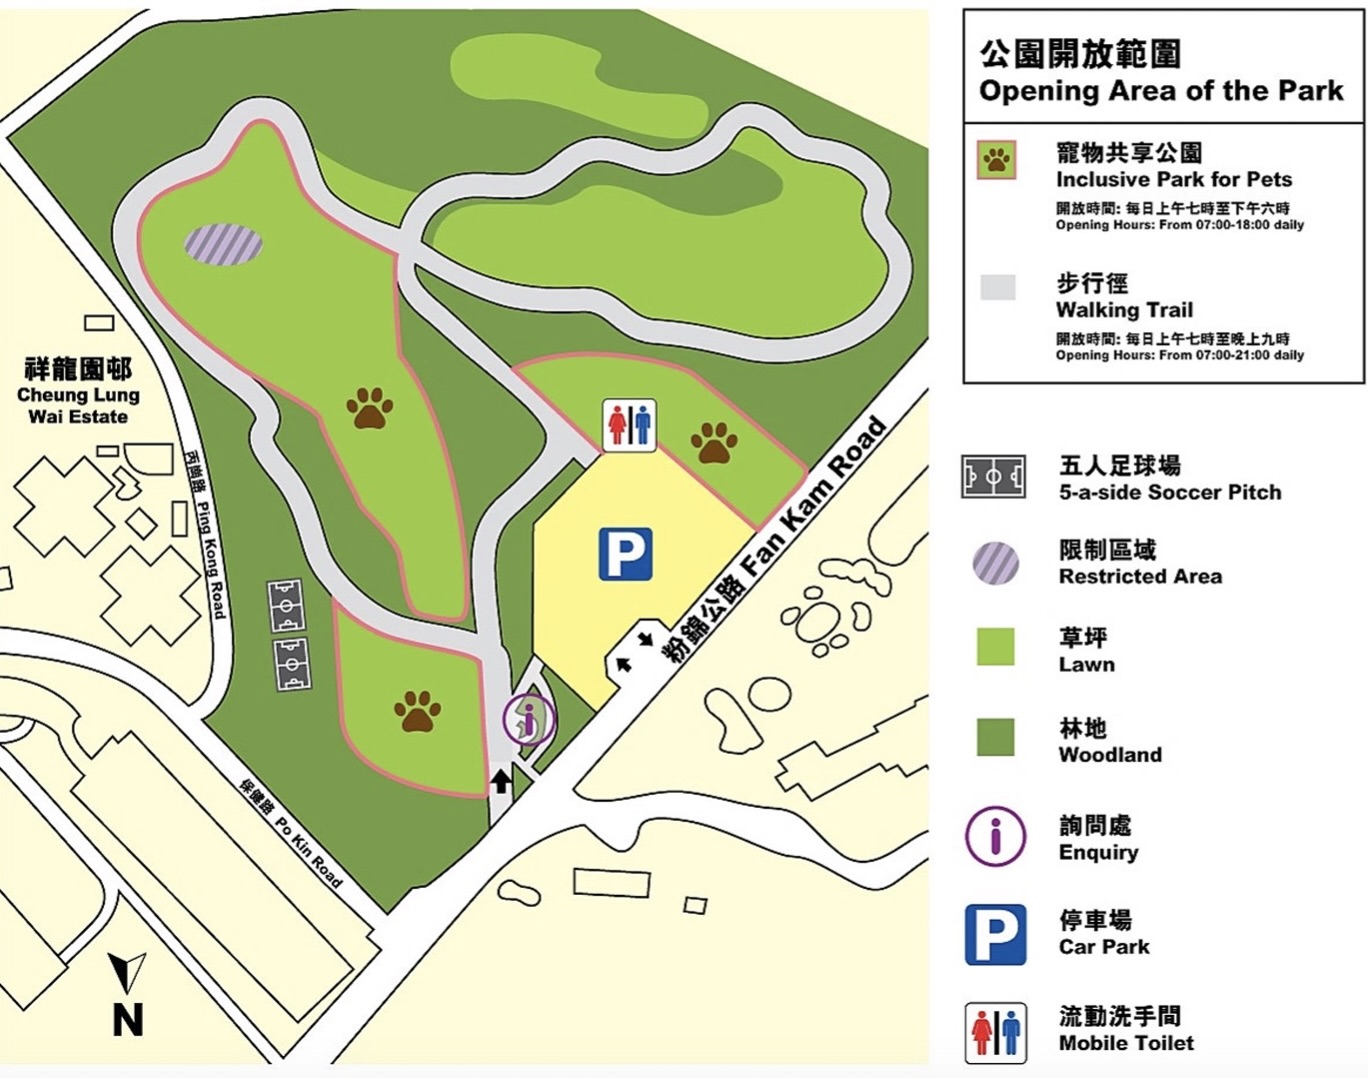 olf golf course park map